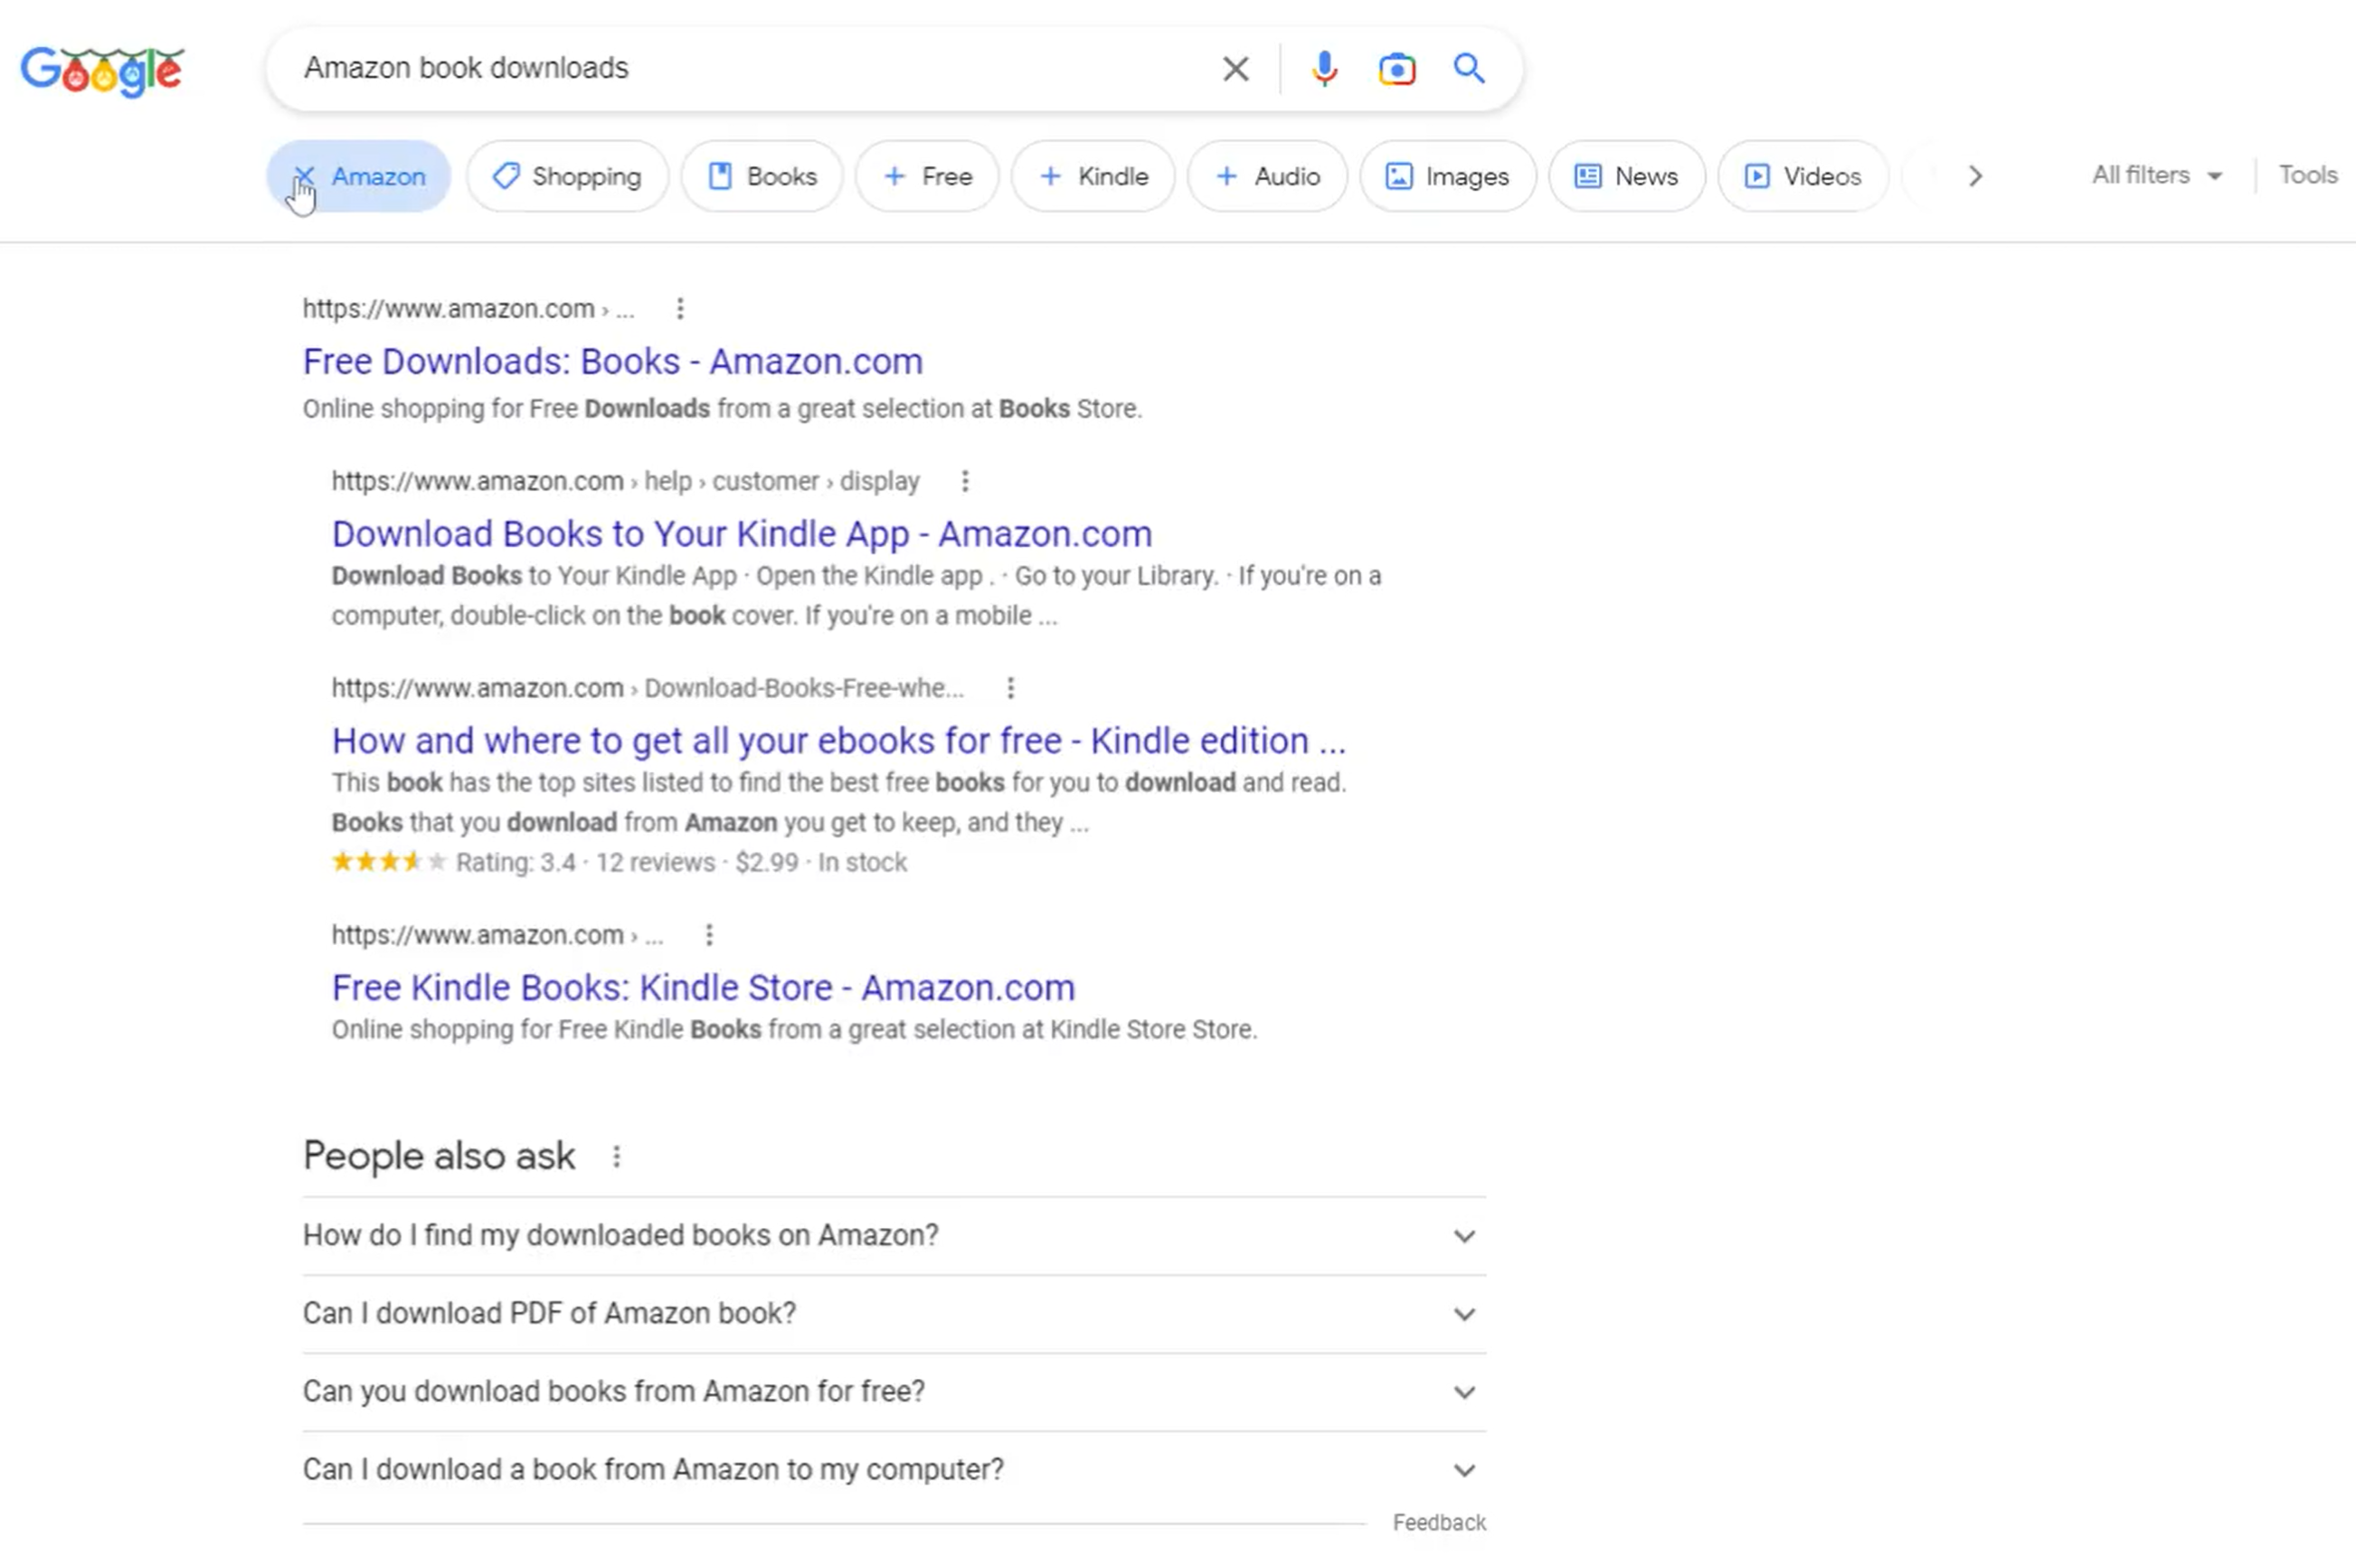 Themenbasierte Filter in der Desktop-Suche von Google